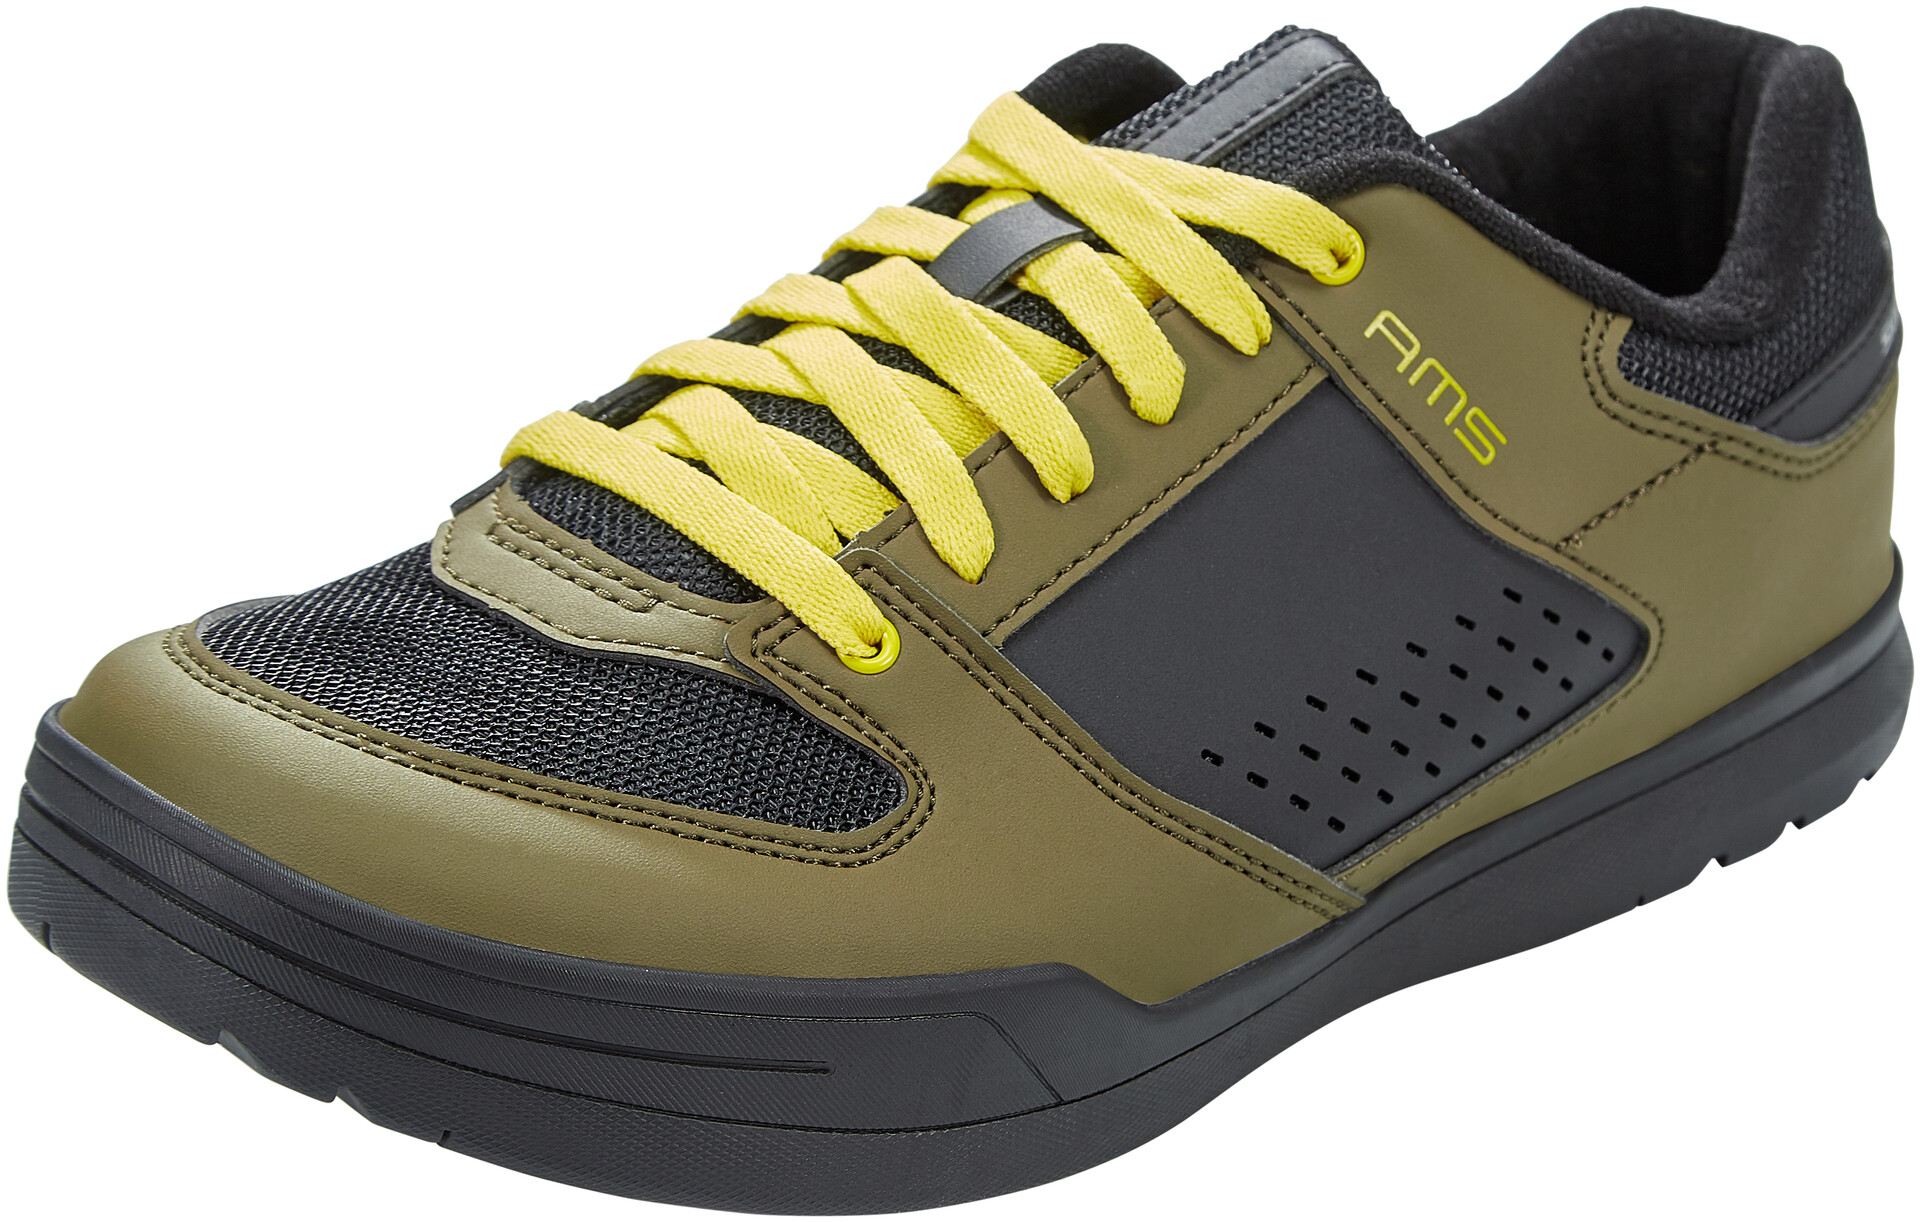 Shimano SH-AM501 Shoes olive at 